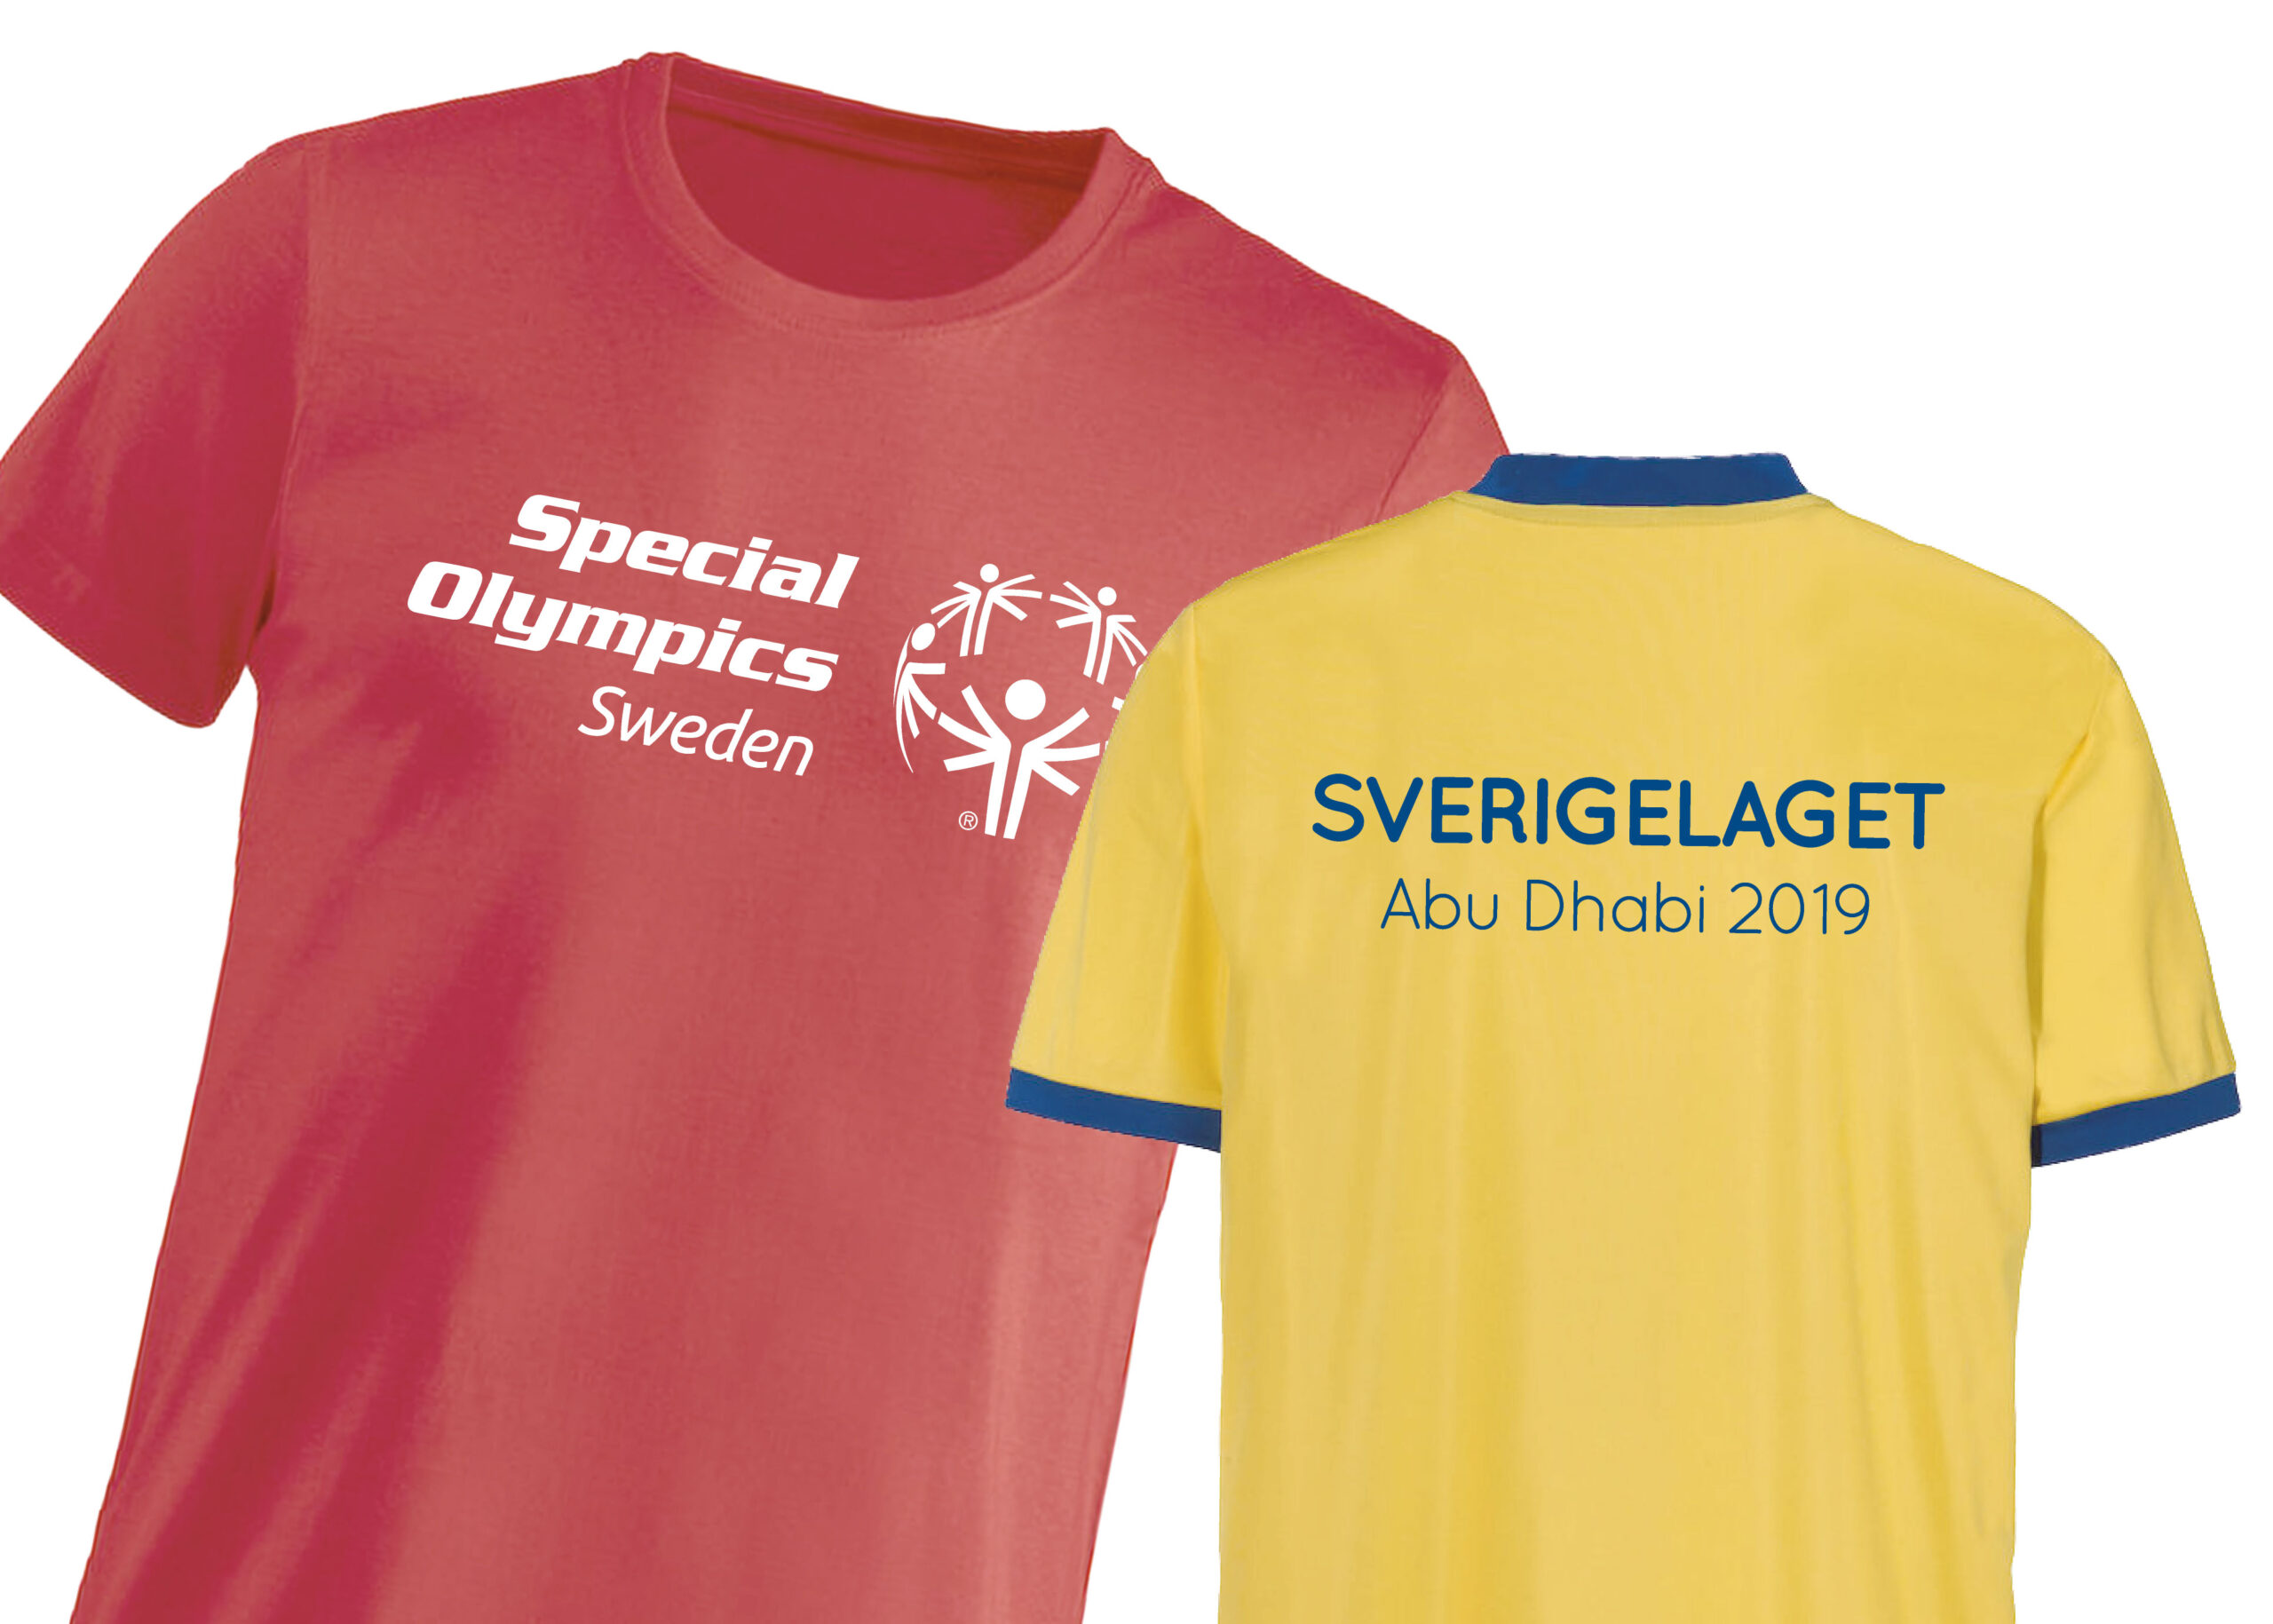 Ett nyligen inlett samarbete med Svensk Parasport som vi är mycket glada att få vara en del av!